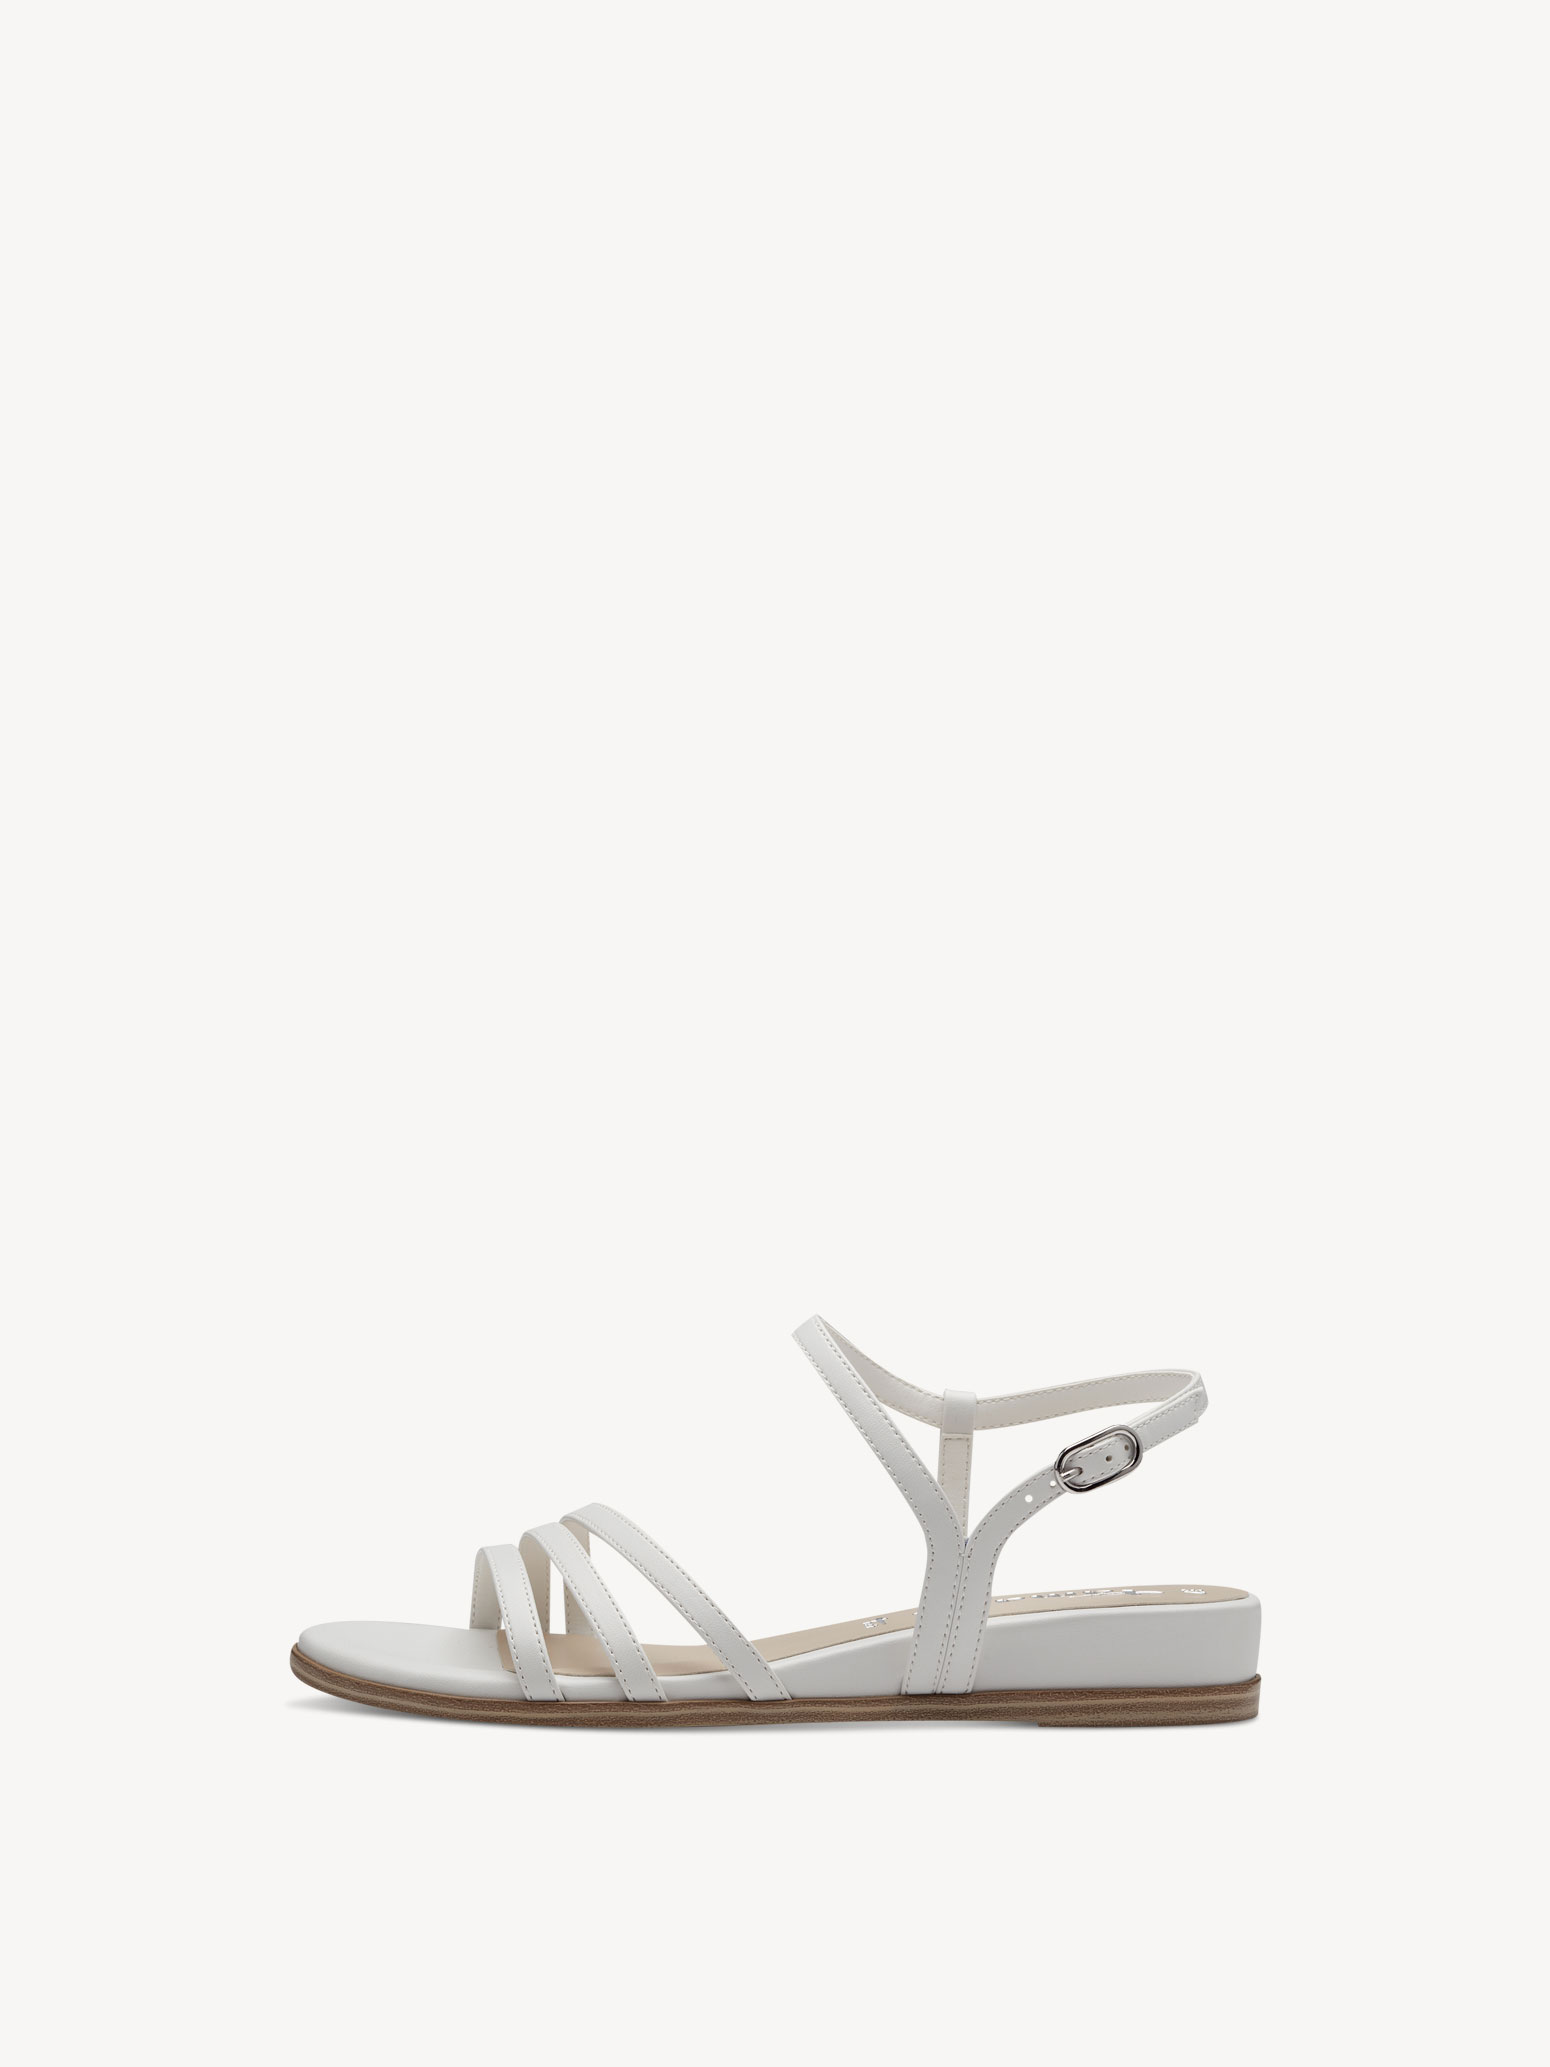 Sandal - white